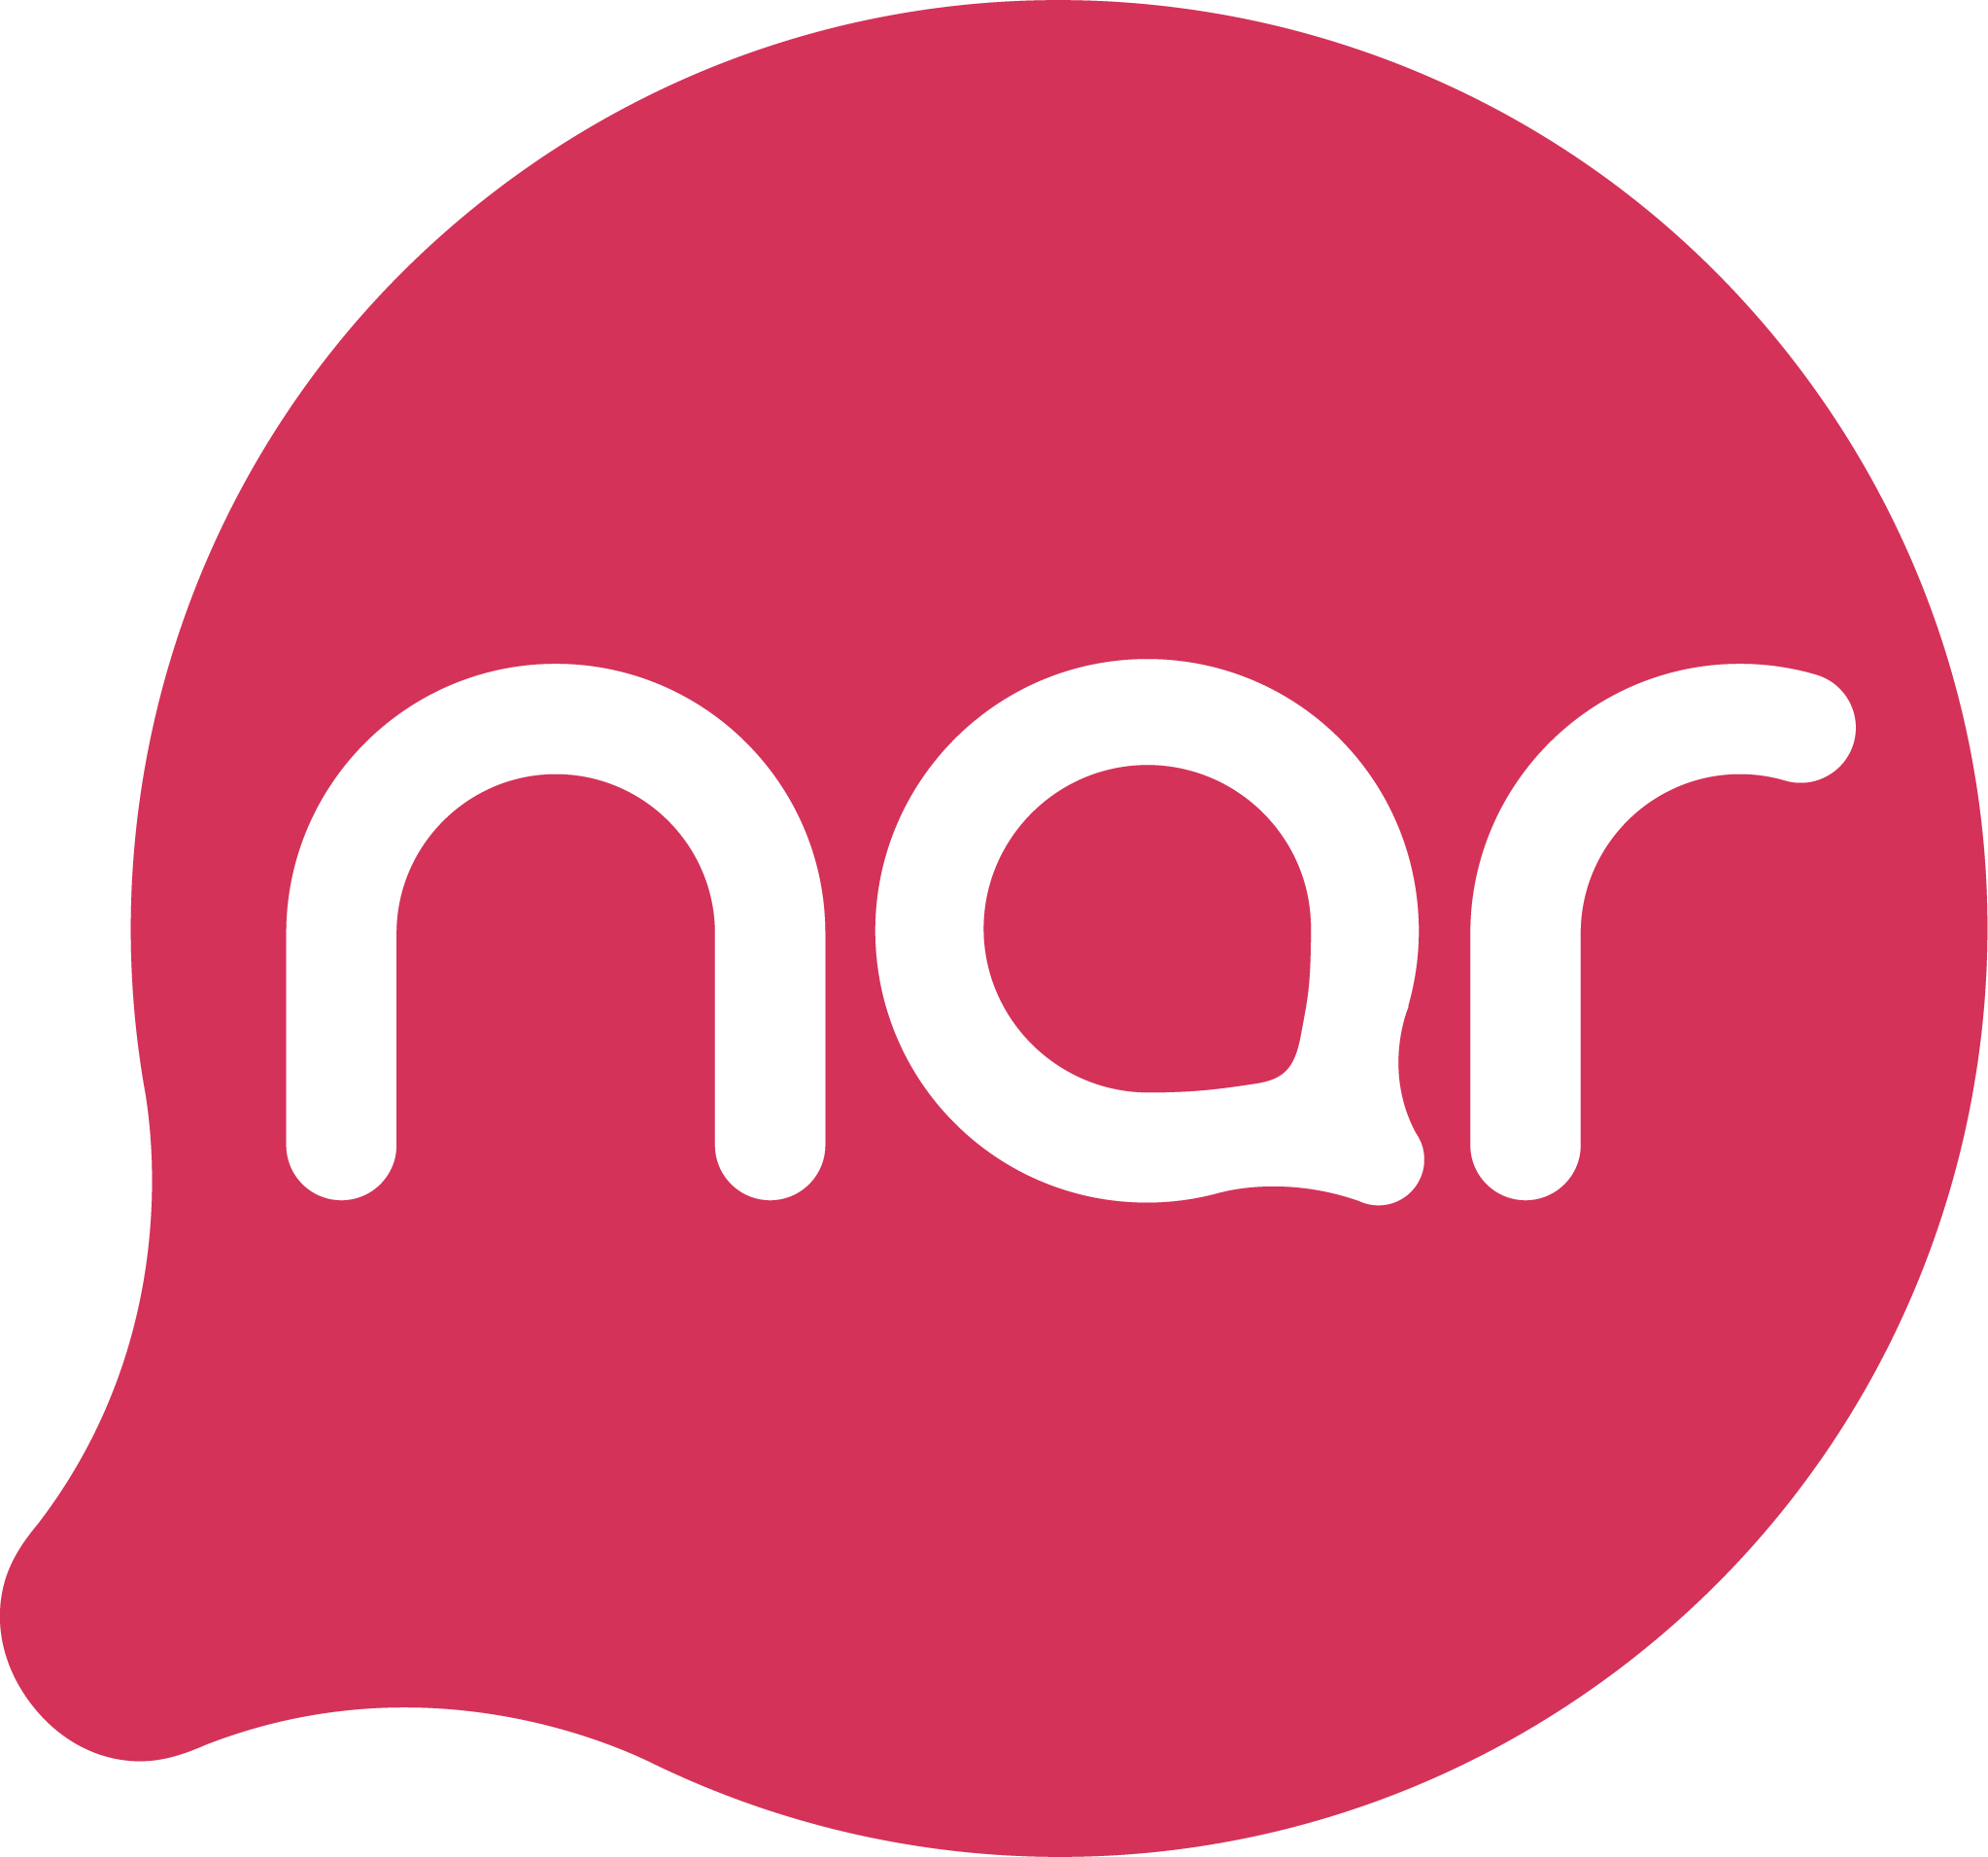 Nar предоставляет оперативные клиентские услуги абонентам посредством социальных сетей